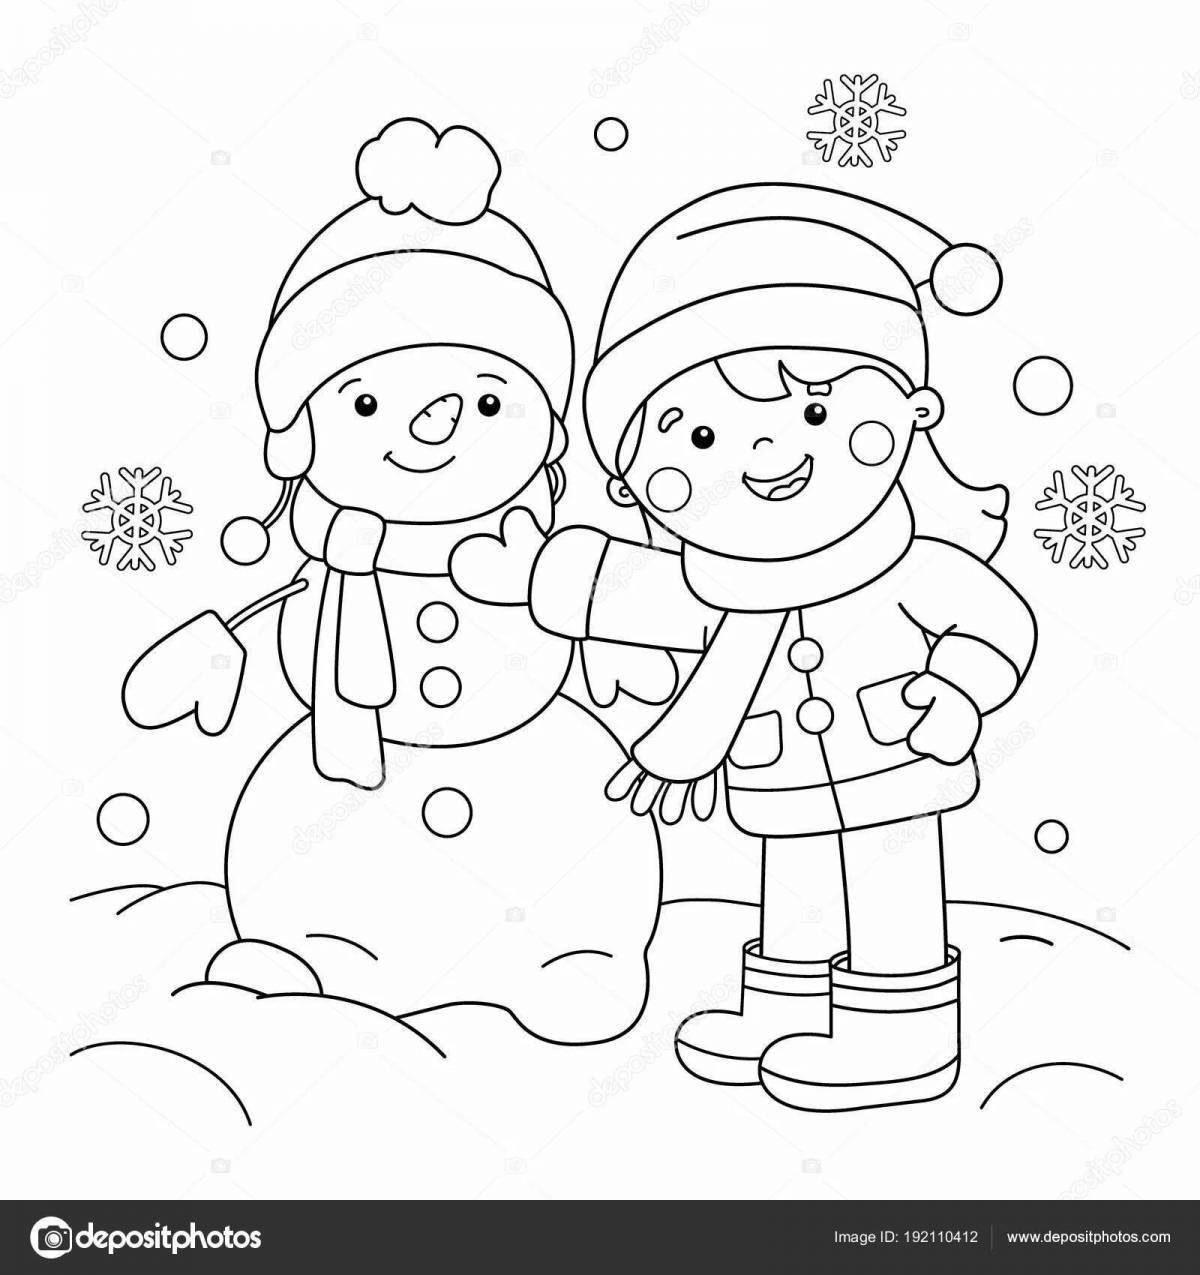 Exquisite winter coloring book for preschoolers